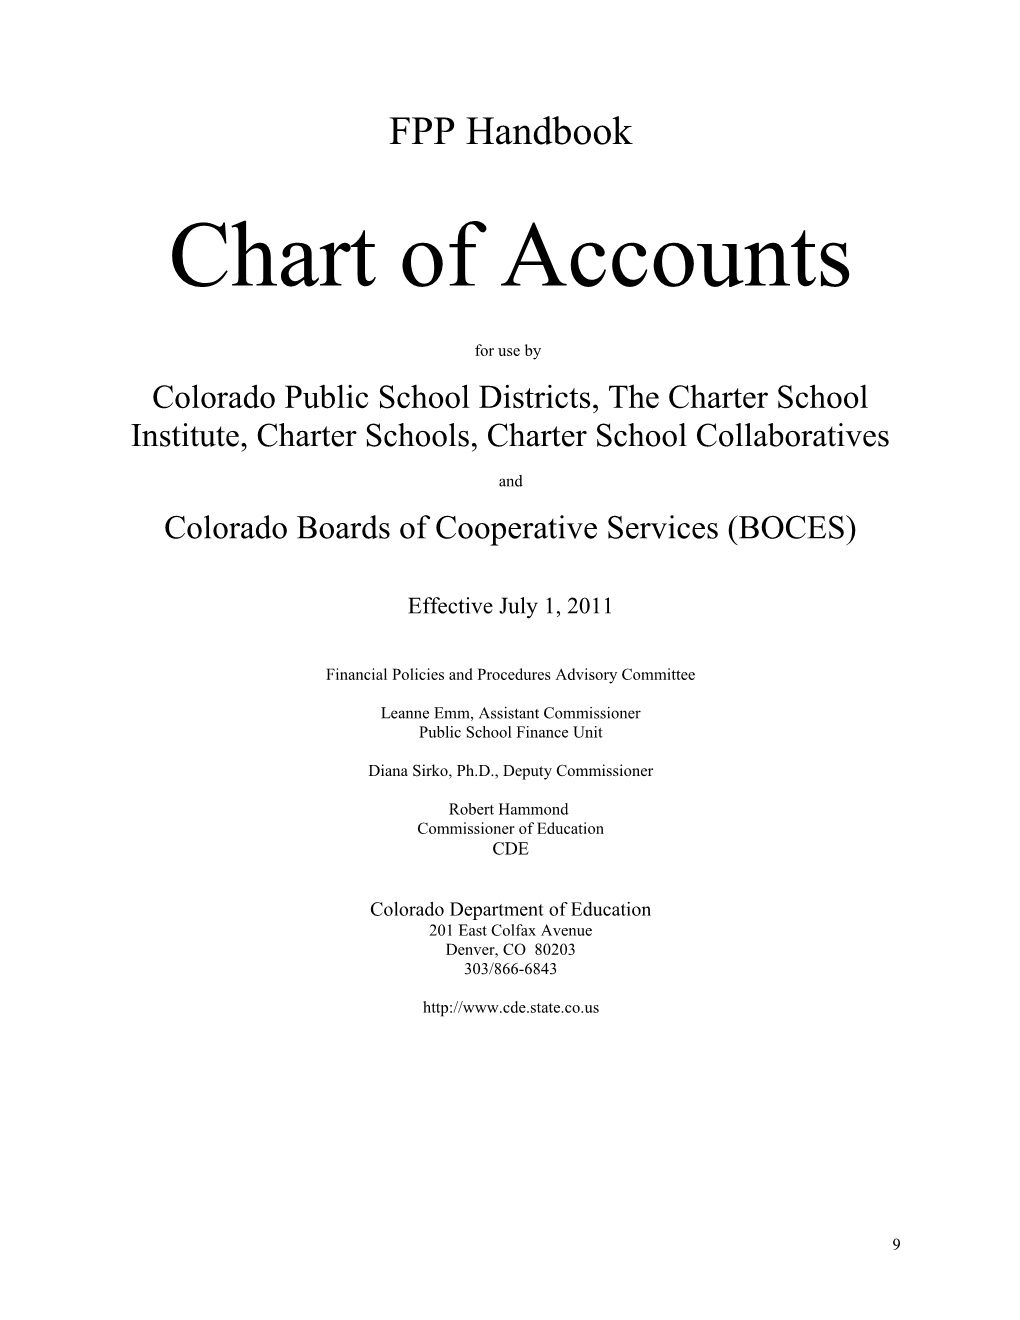 Colorado Boards of Cooperative Services (BOCES)